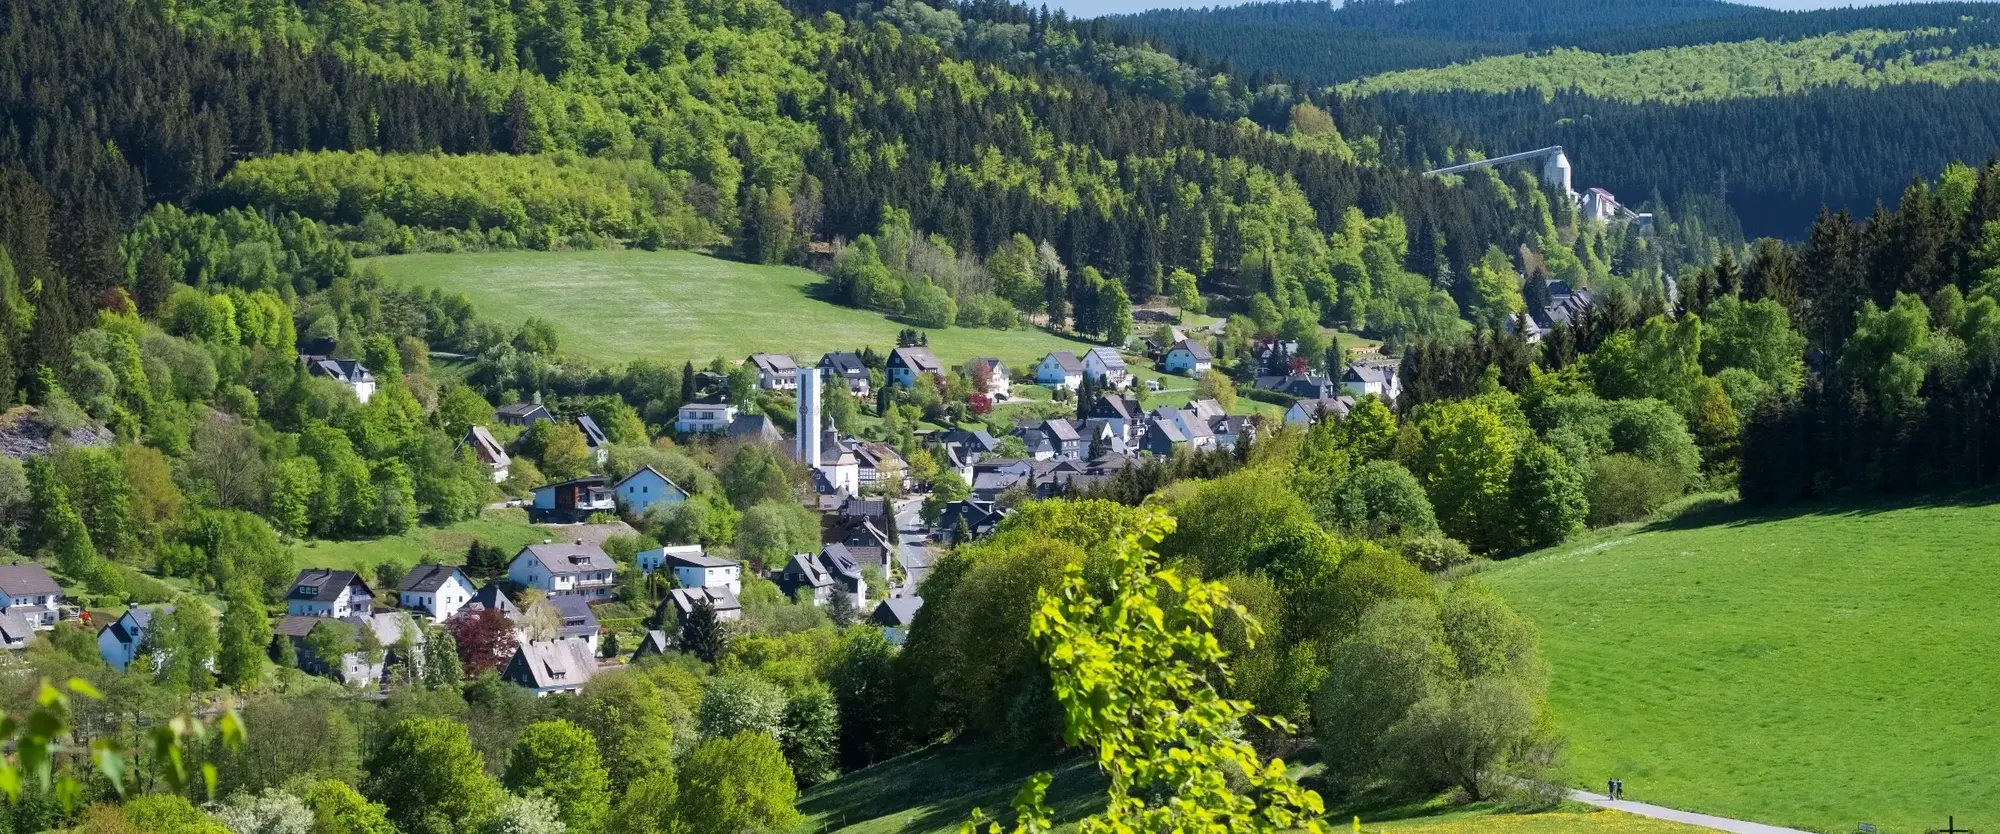 Blick auf die Ortschaft Silbach mit seinen Wäldern und Bergen.